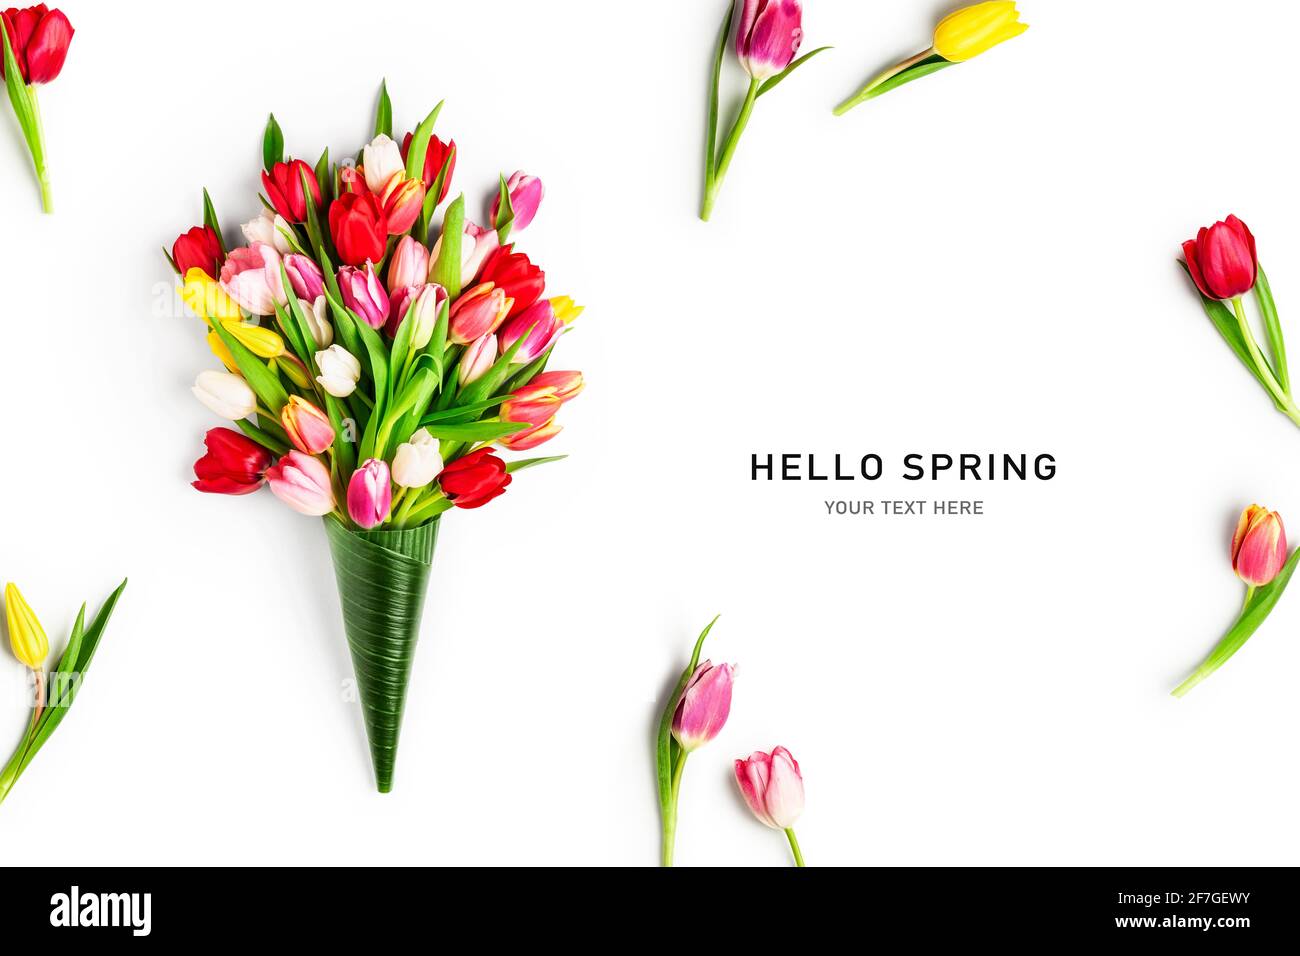 Kreatives Layout mit bunten Tulpenblumen isoliert auf weißem Hintergrund. Florale Komposition mit schönen frischen Tulpen. Hallo Frühling und ostern Konz Stockfoto